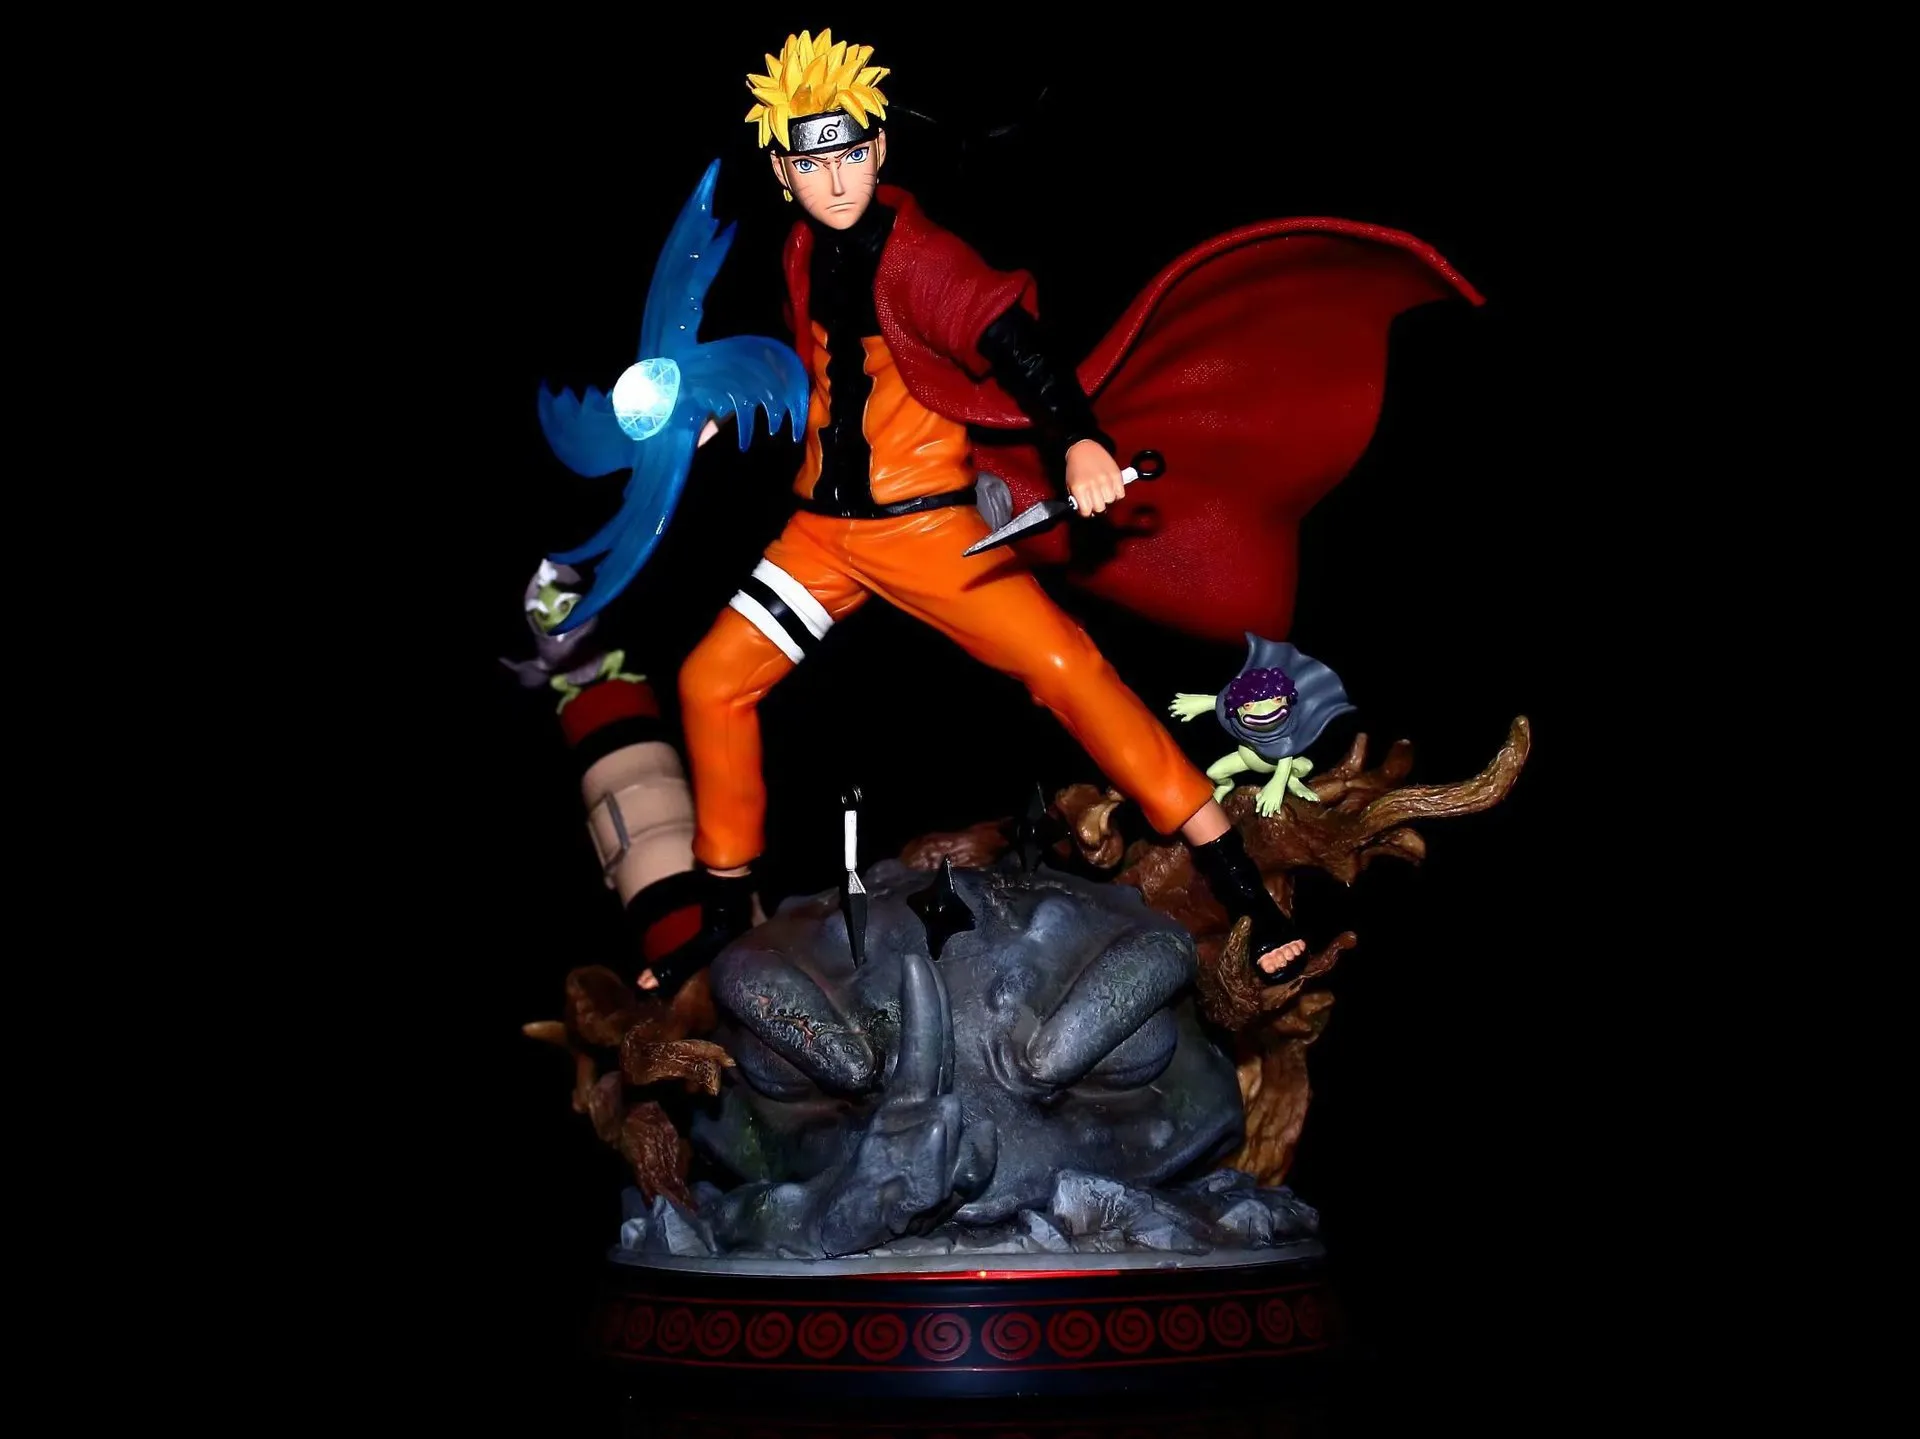 Naruto GK Brucia Vento rospo Fairy Naruto Sasuke Vortex Spirale PILL MODELLO MODELLO DECORAZIONE DECORAZIONE OFFICIO9488222